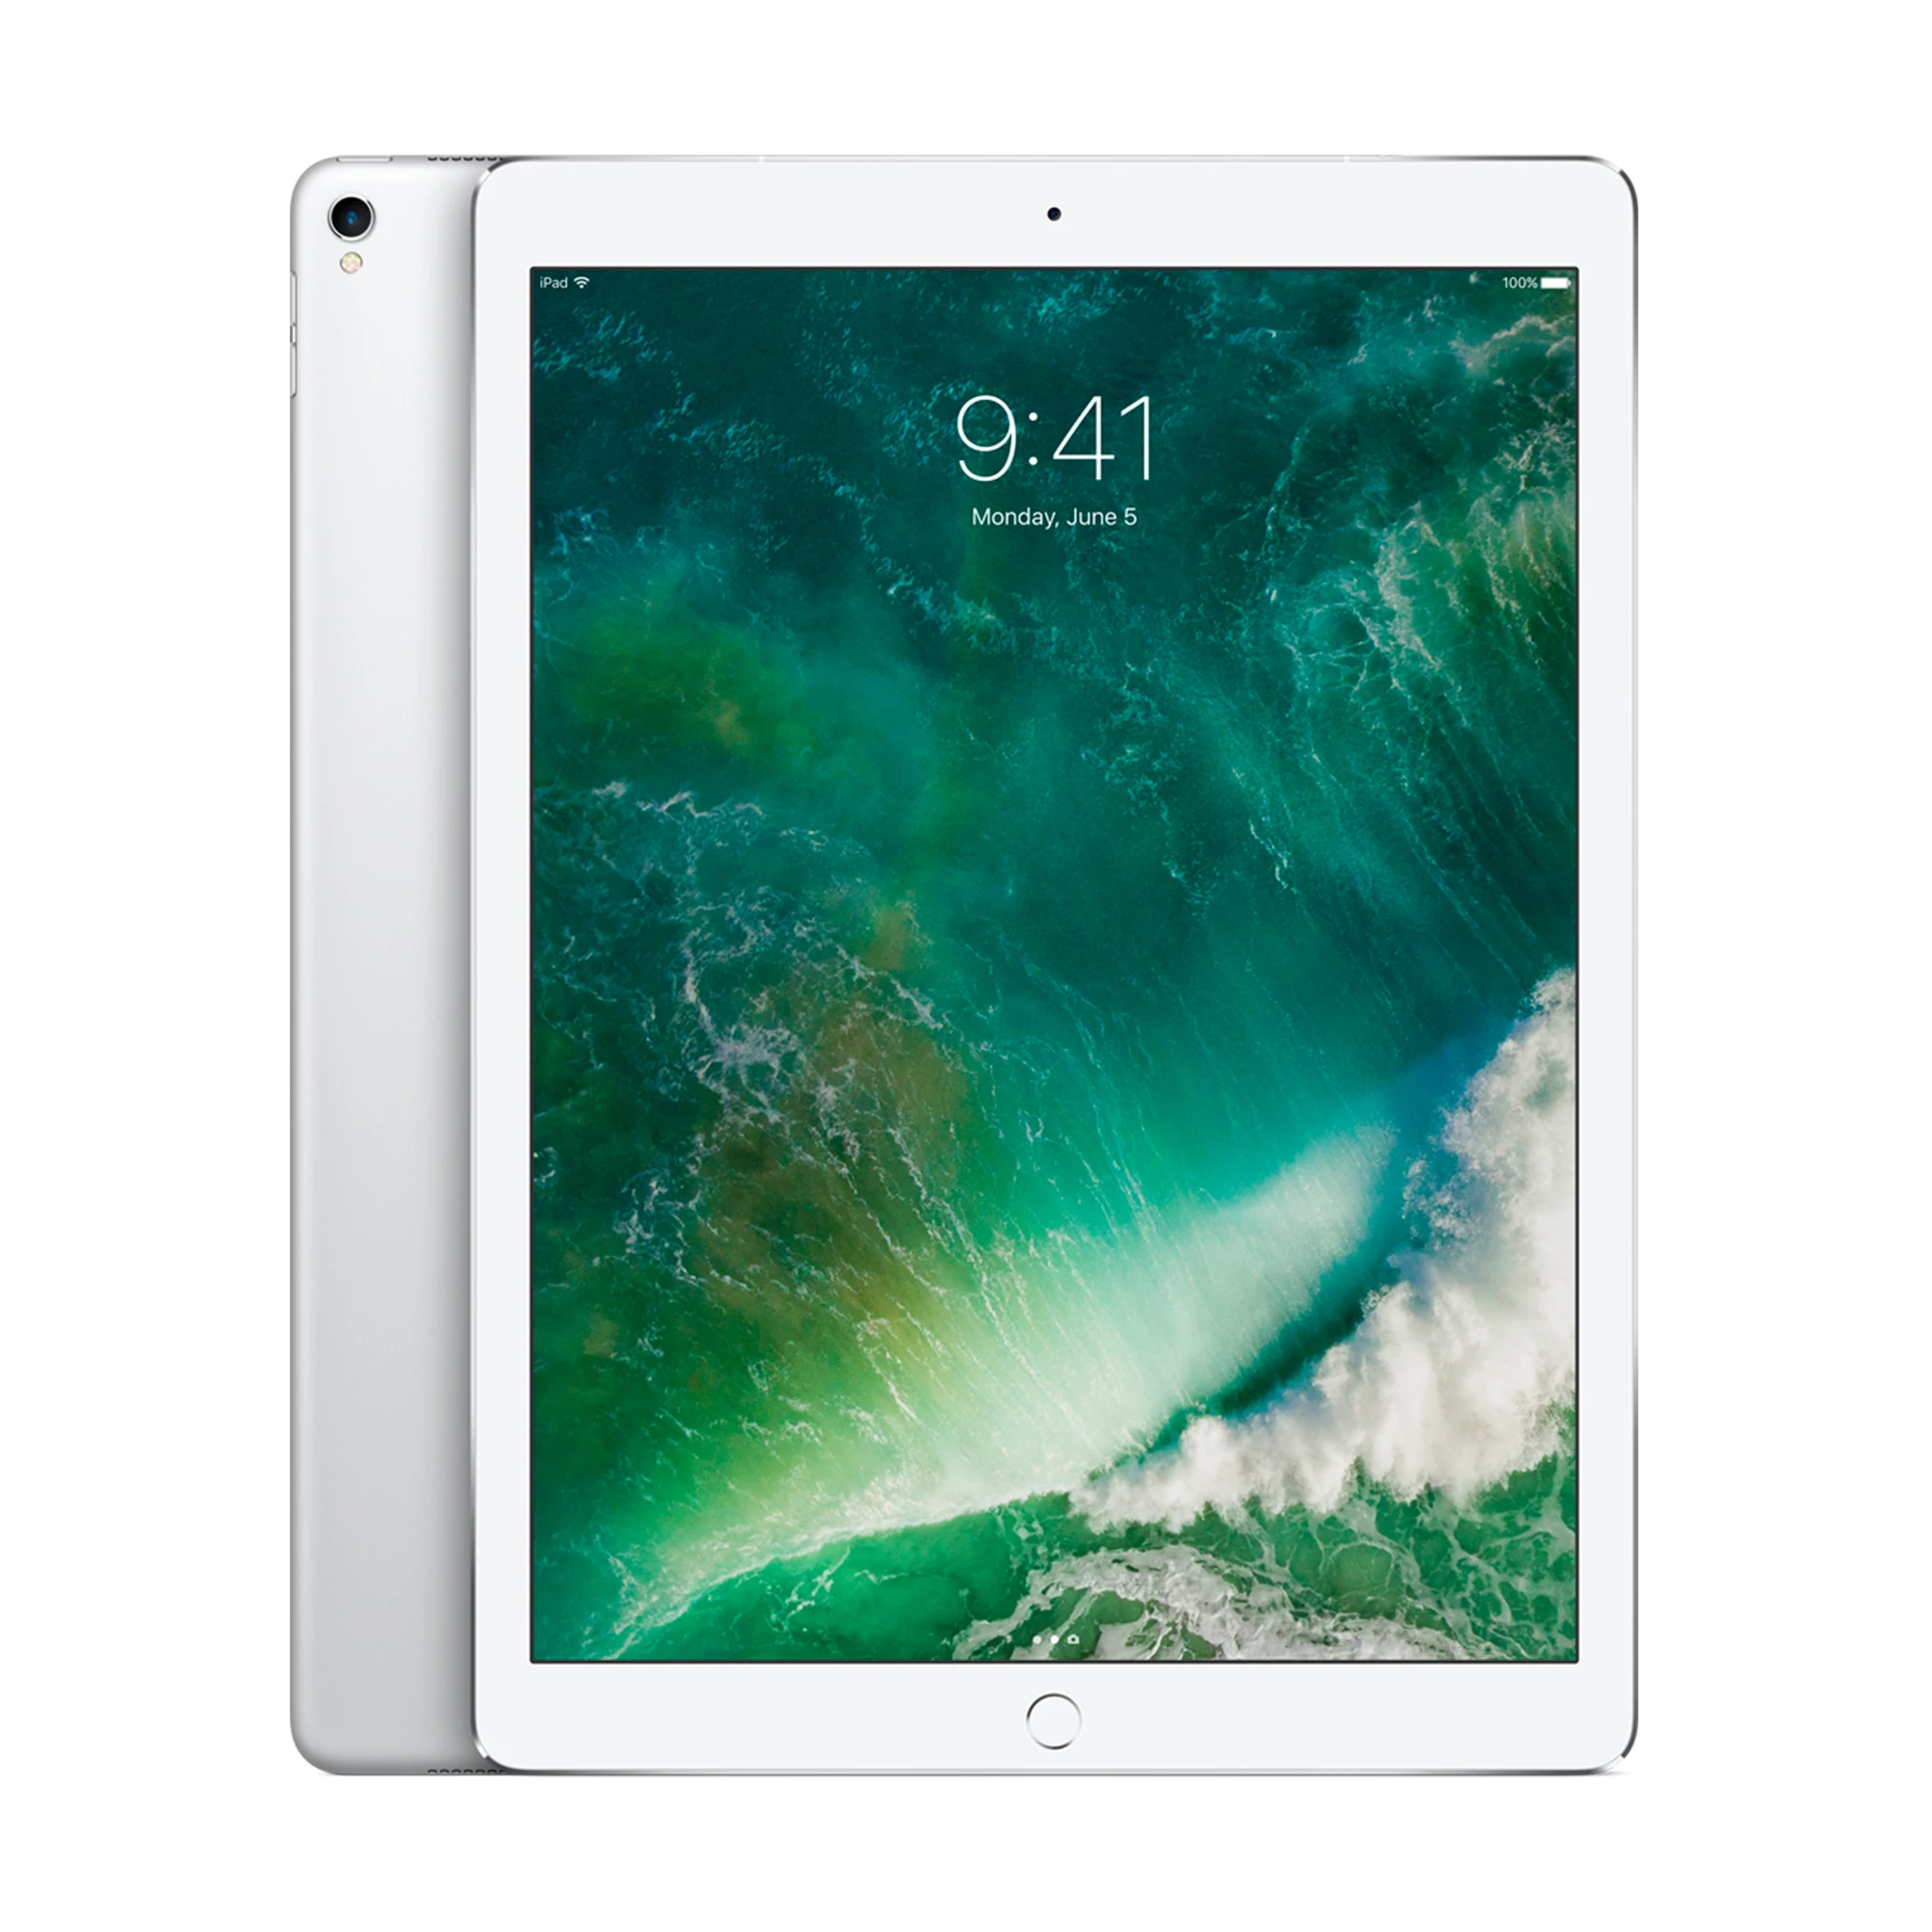 iPad Pro 12.9" (2017) Wi-Fi + Cellular 64GB Silver (MQEE2)